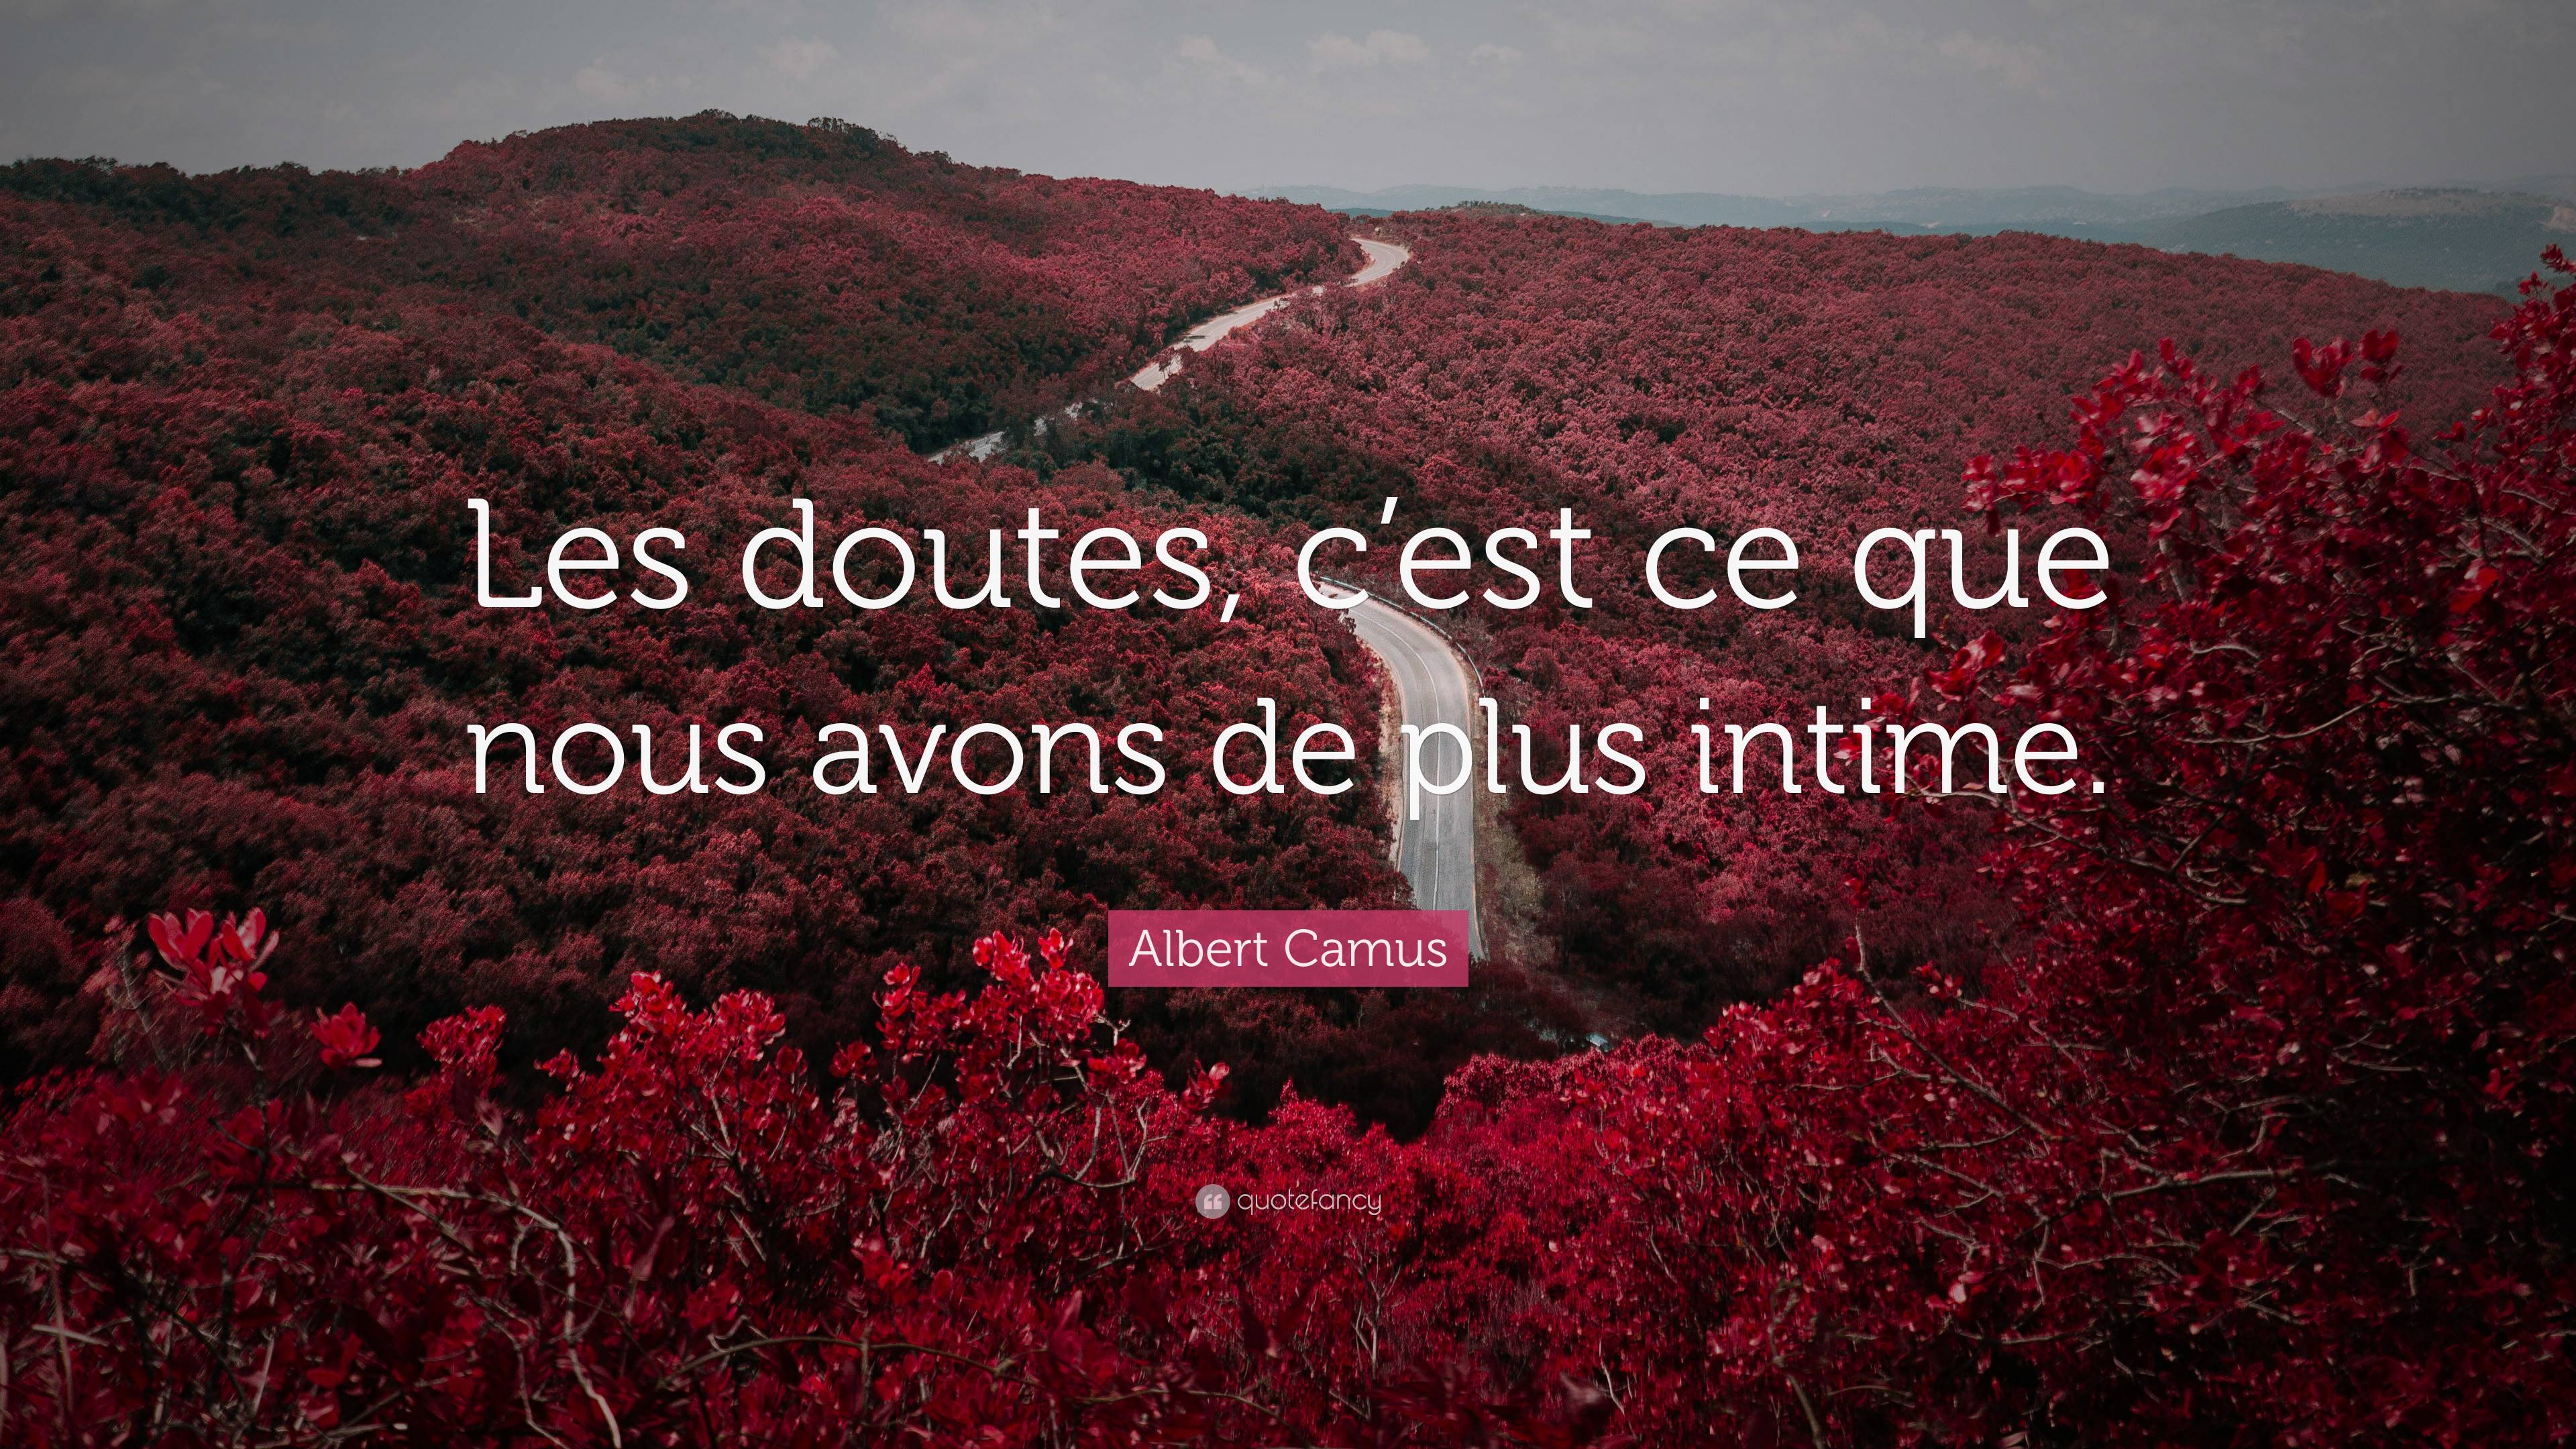 Albert Camus Quote “les Doutes Cest Ce Que Nous Avons De Plus Intime”